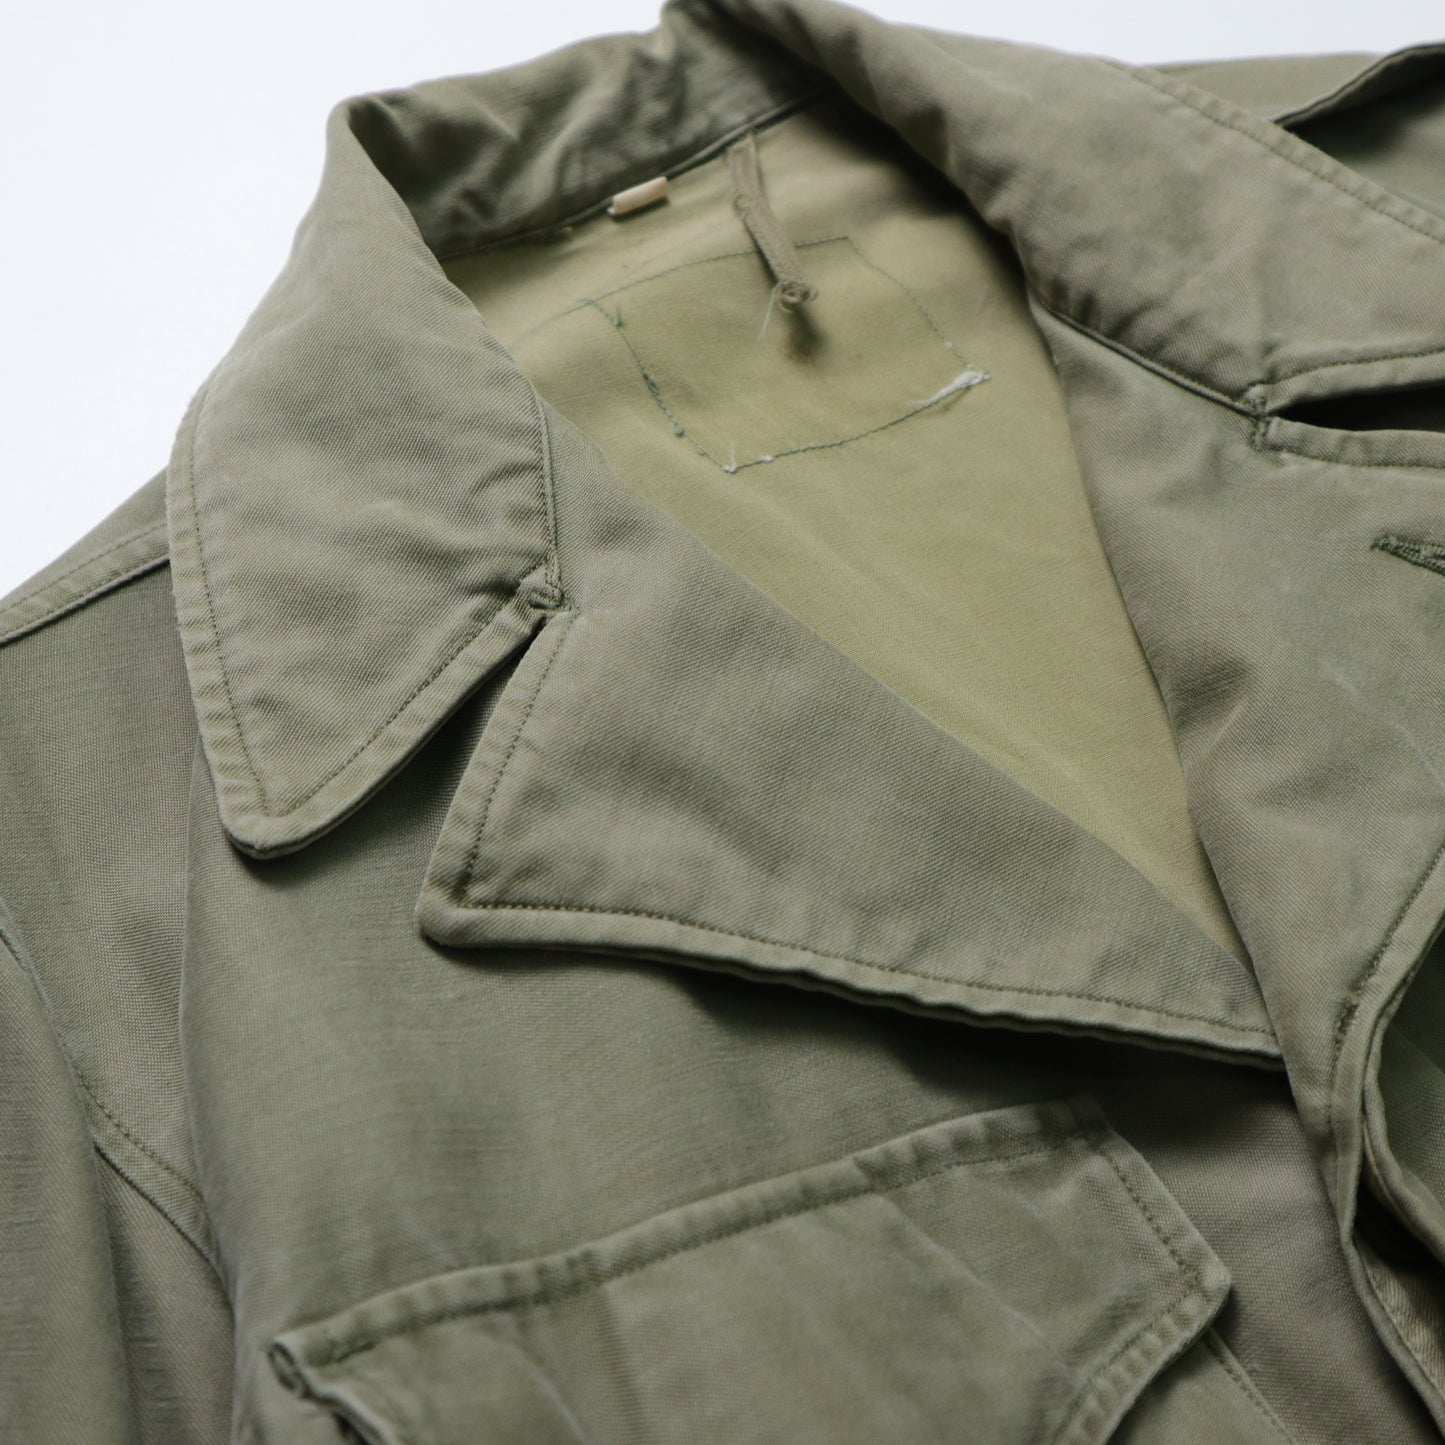 1940s WWII M43 field jacket 38R Field jacket